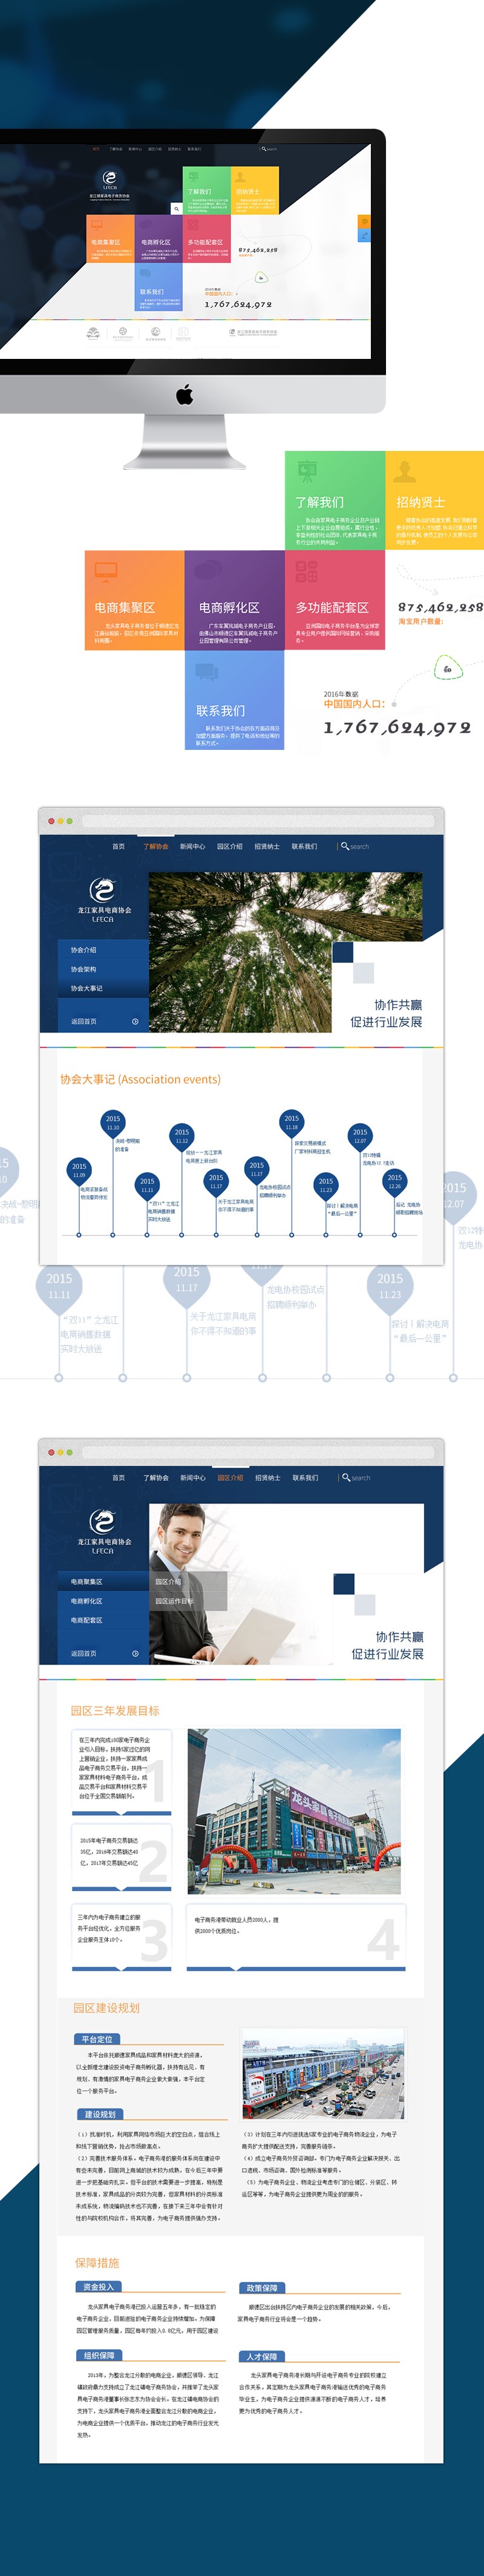 龙江家具协会官网 网页设计 平面设计